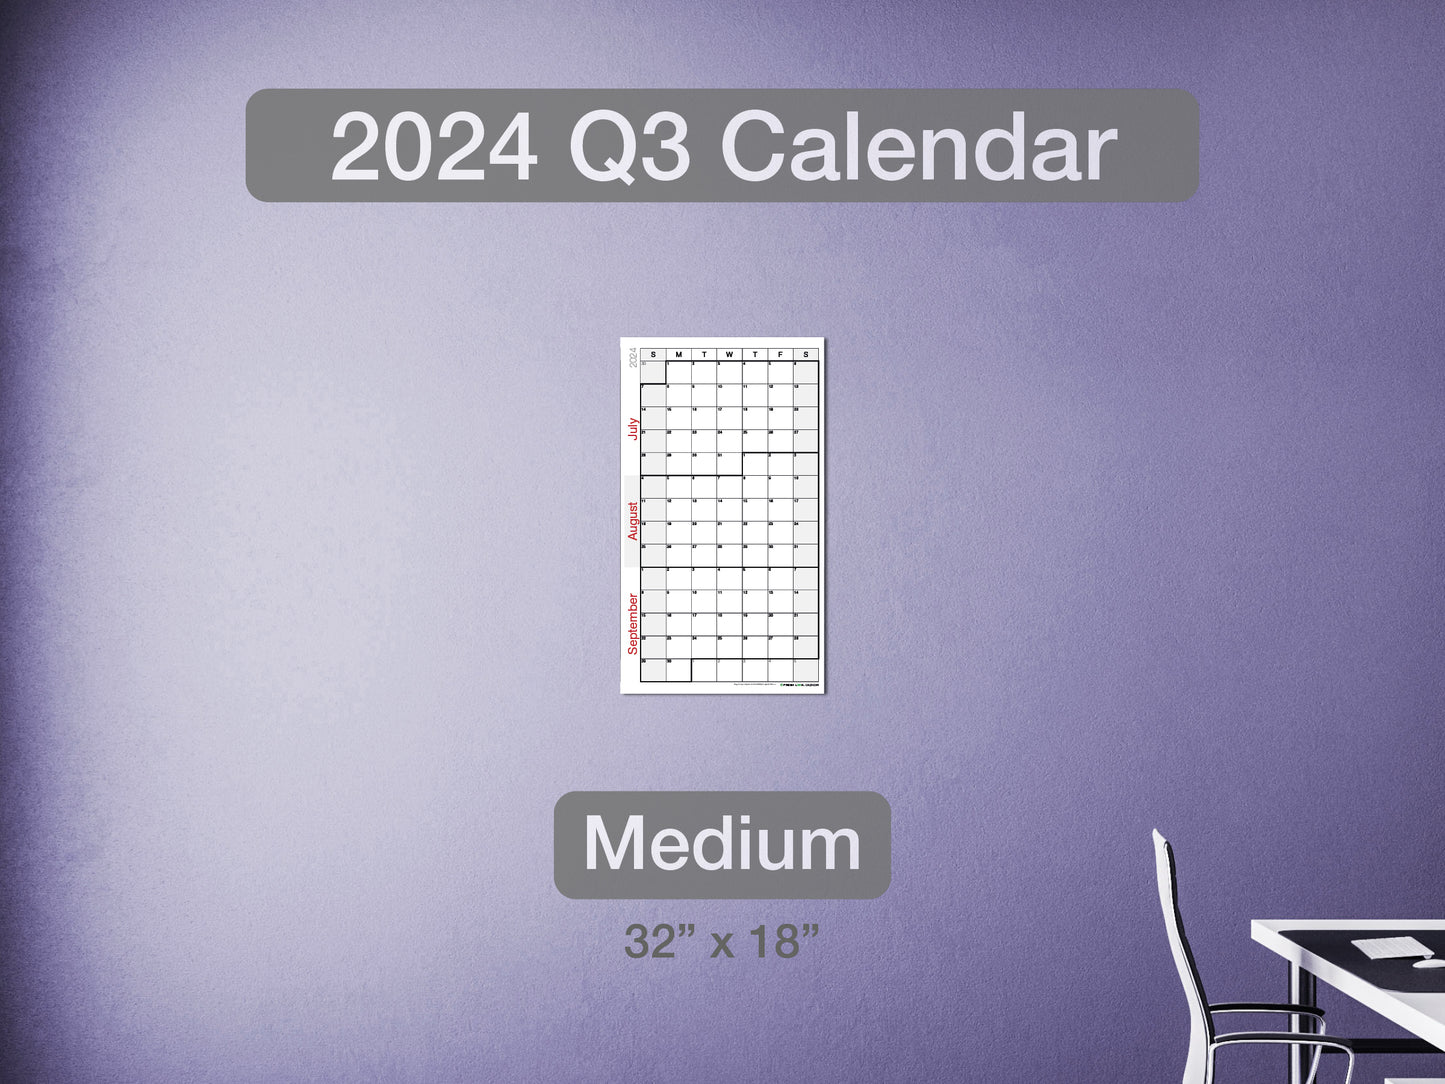 2024 Q3 Calendar Medium